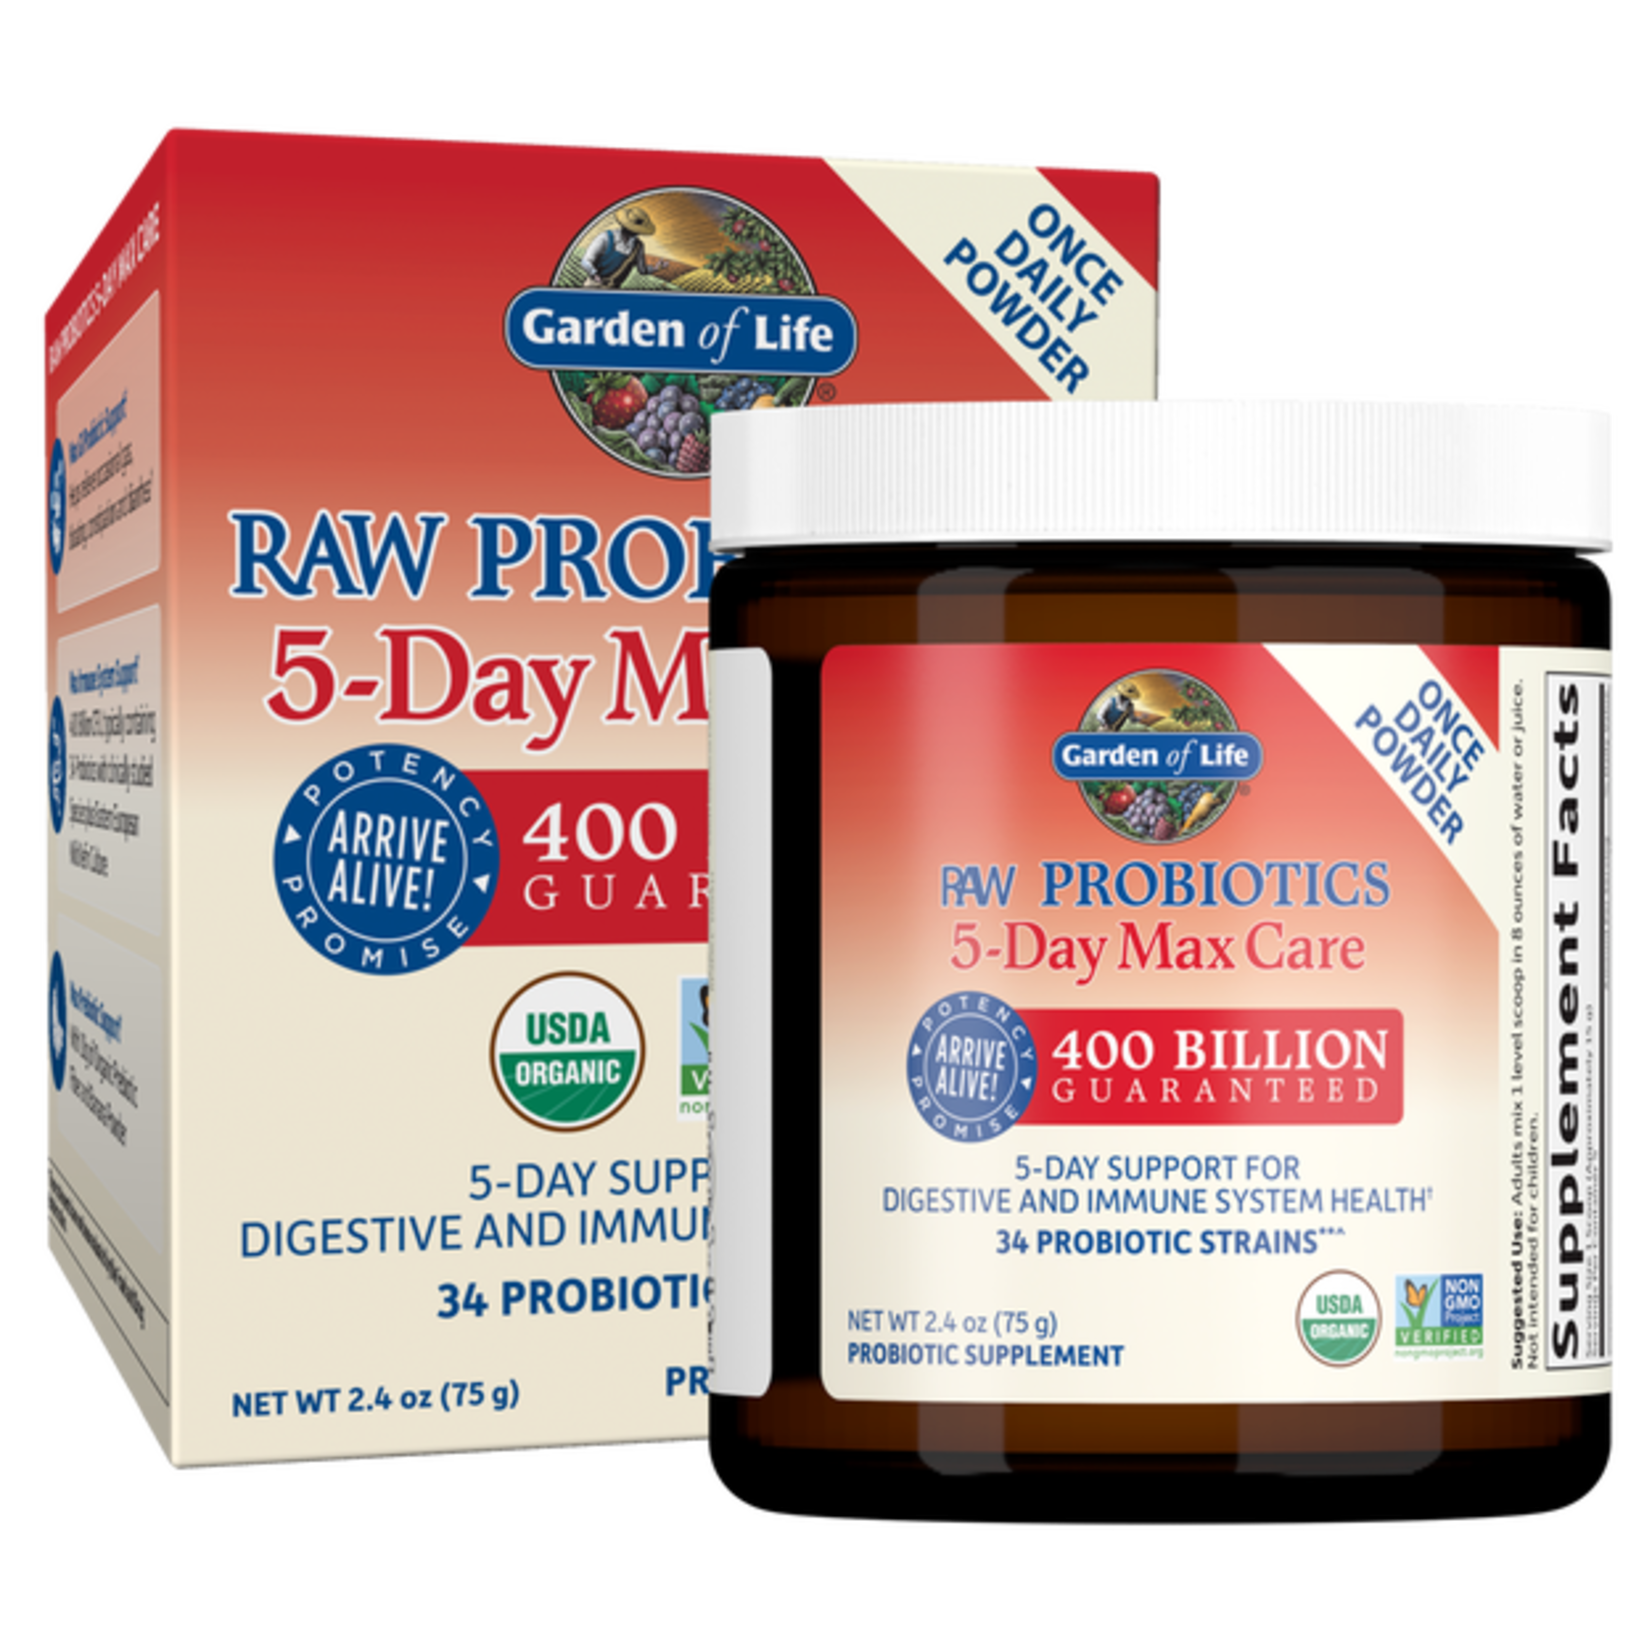 Garden of Life Garden Of Life - Raw Probiotics 5 Day Max Care 400 Billion Cfu - 2.4 oz powder